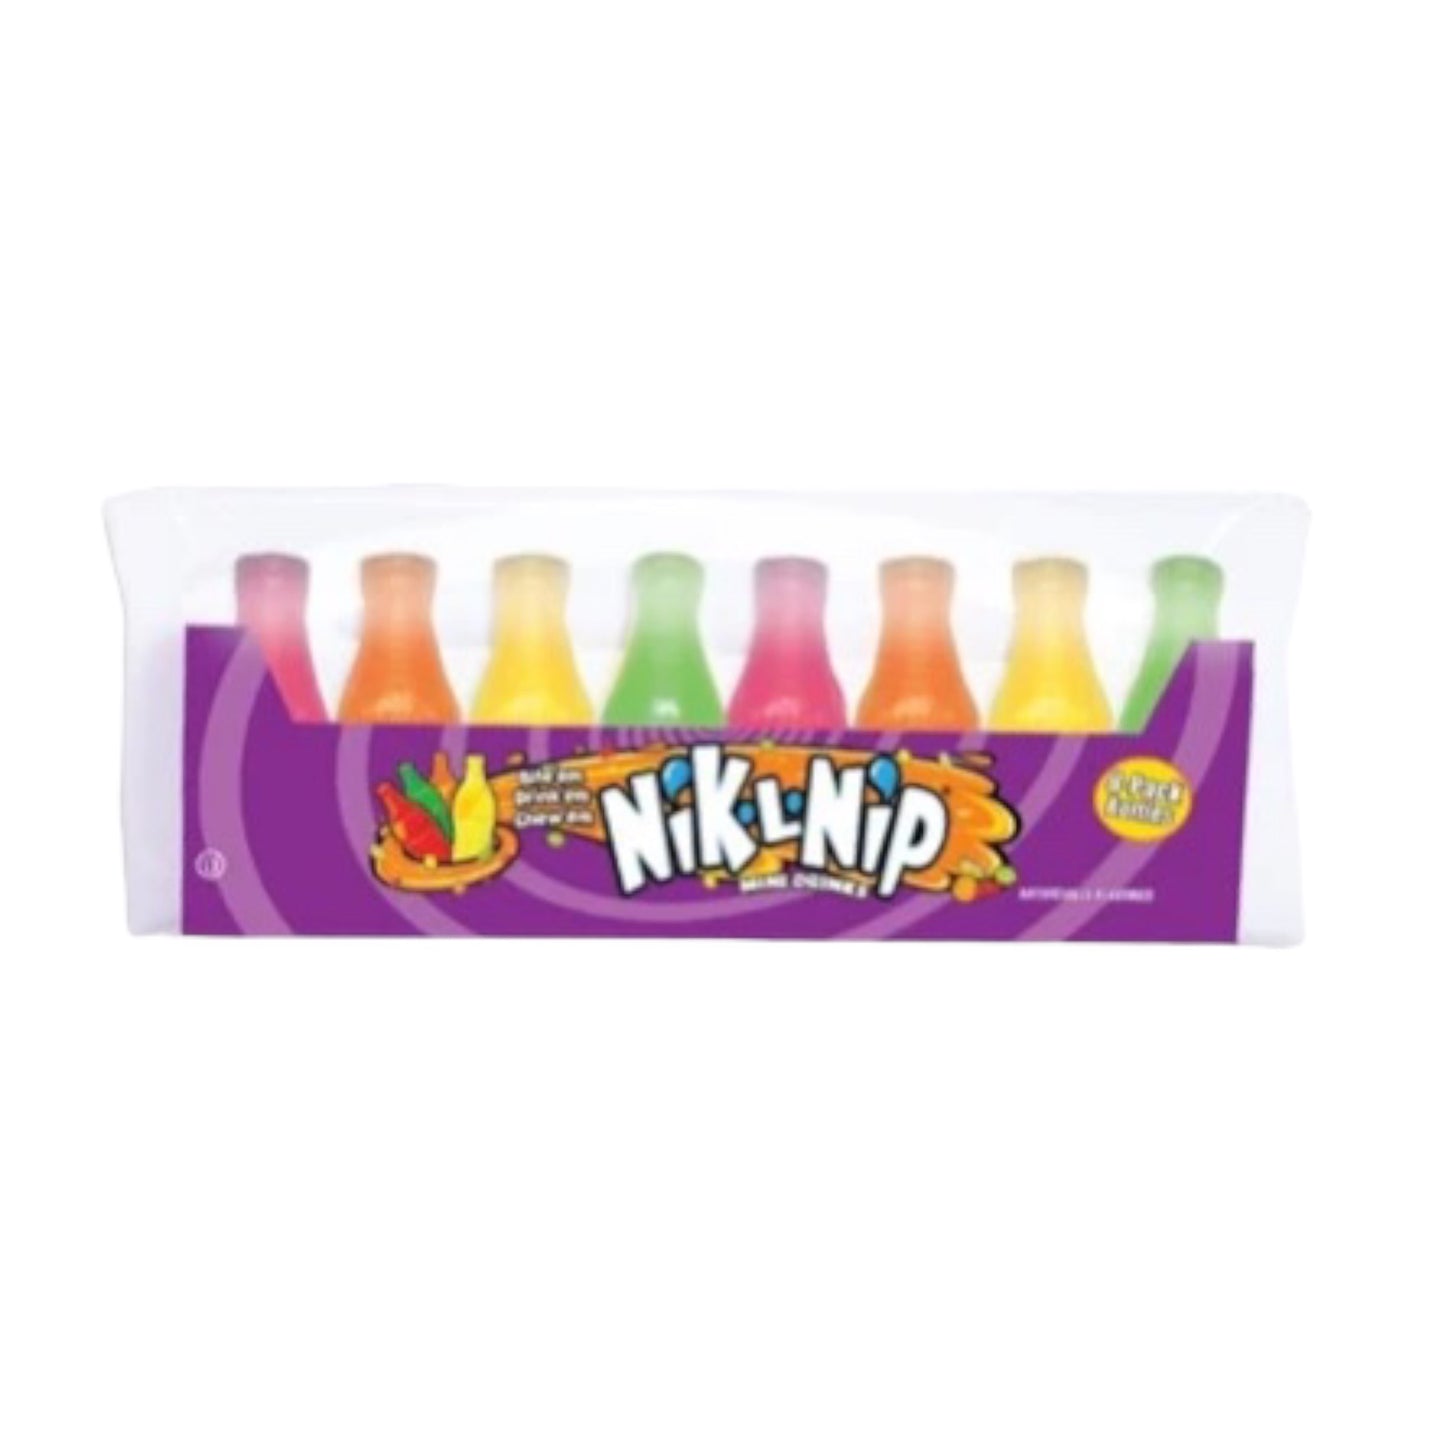 Nik-L-Nip Wax bottles - 2.79oz (79g) - 8 pack